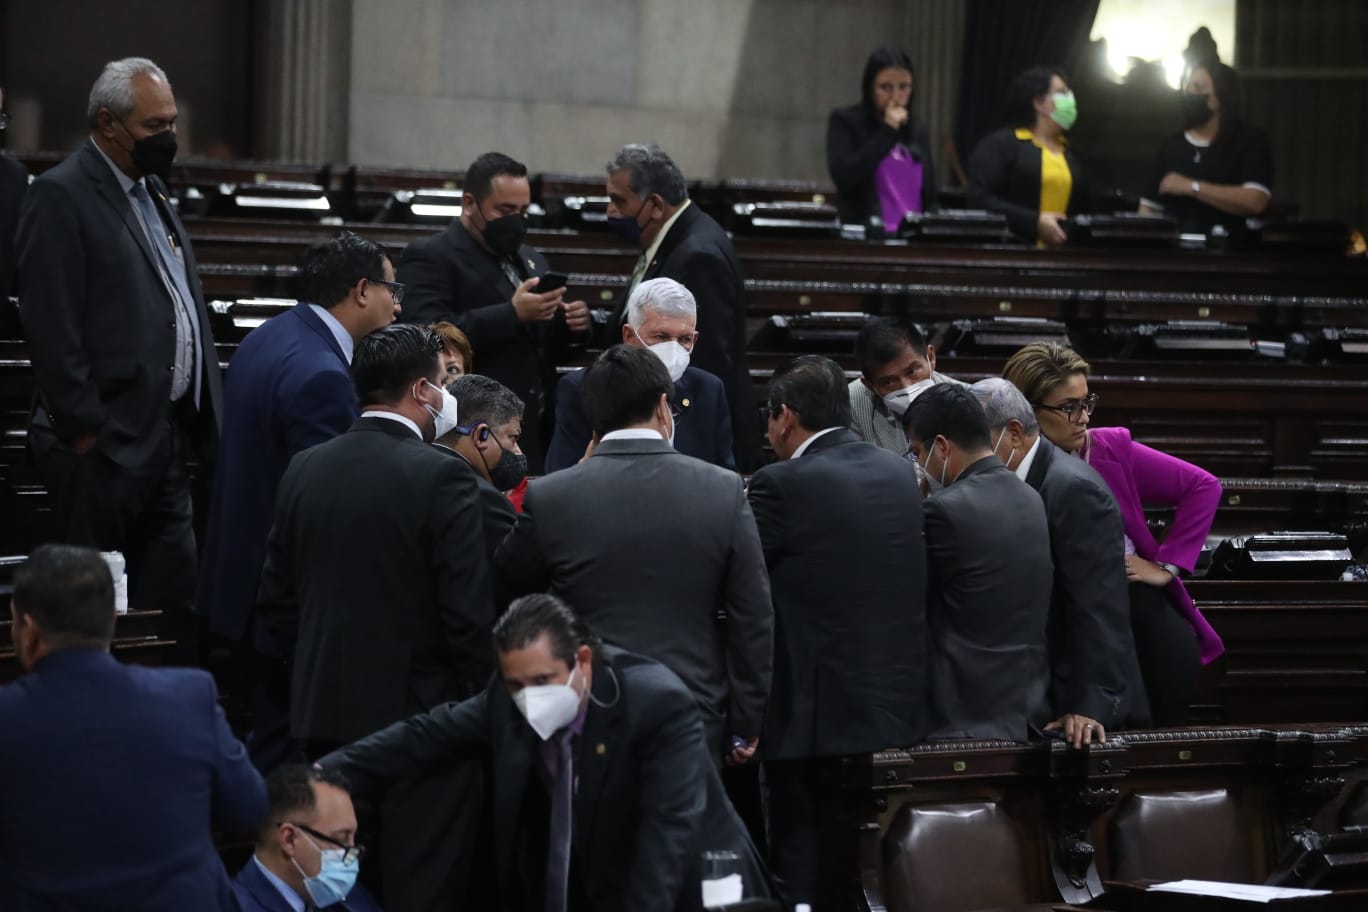 La jornada estuvo llena de discusiones en el Congreso. (Foto Prensa Libre: Juan Diego González)